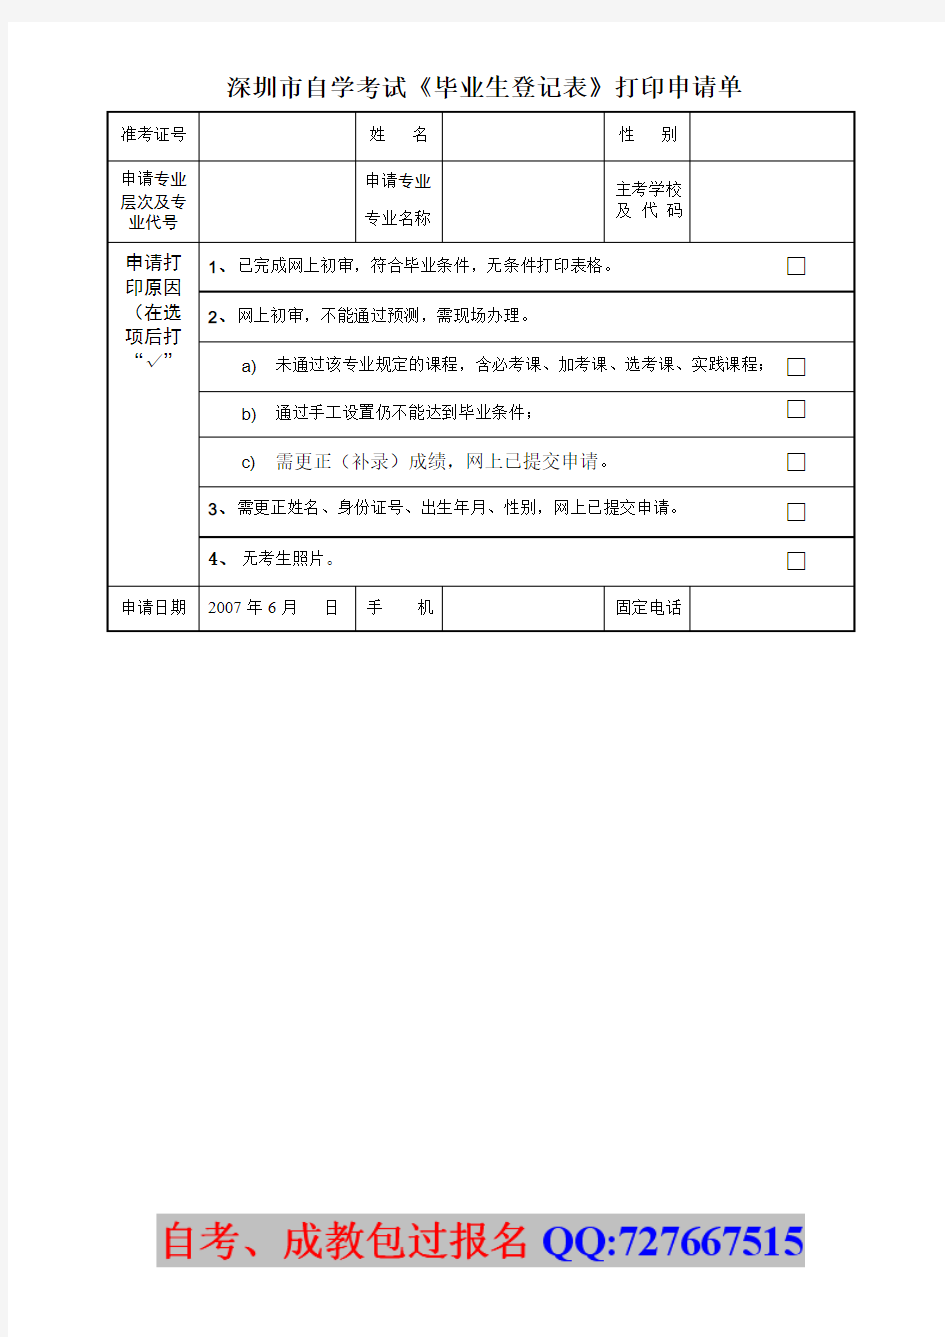 深圳市自学考试《毕业生登记表》打印申请单